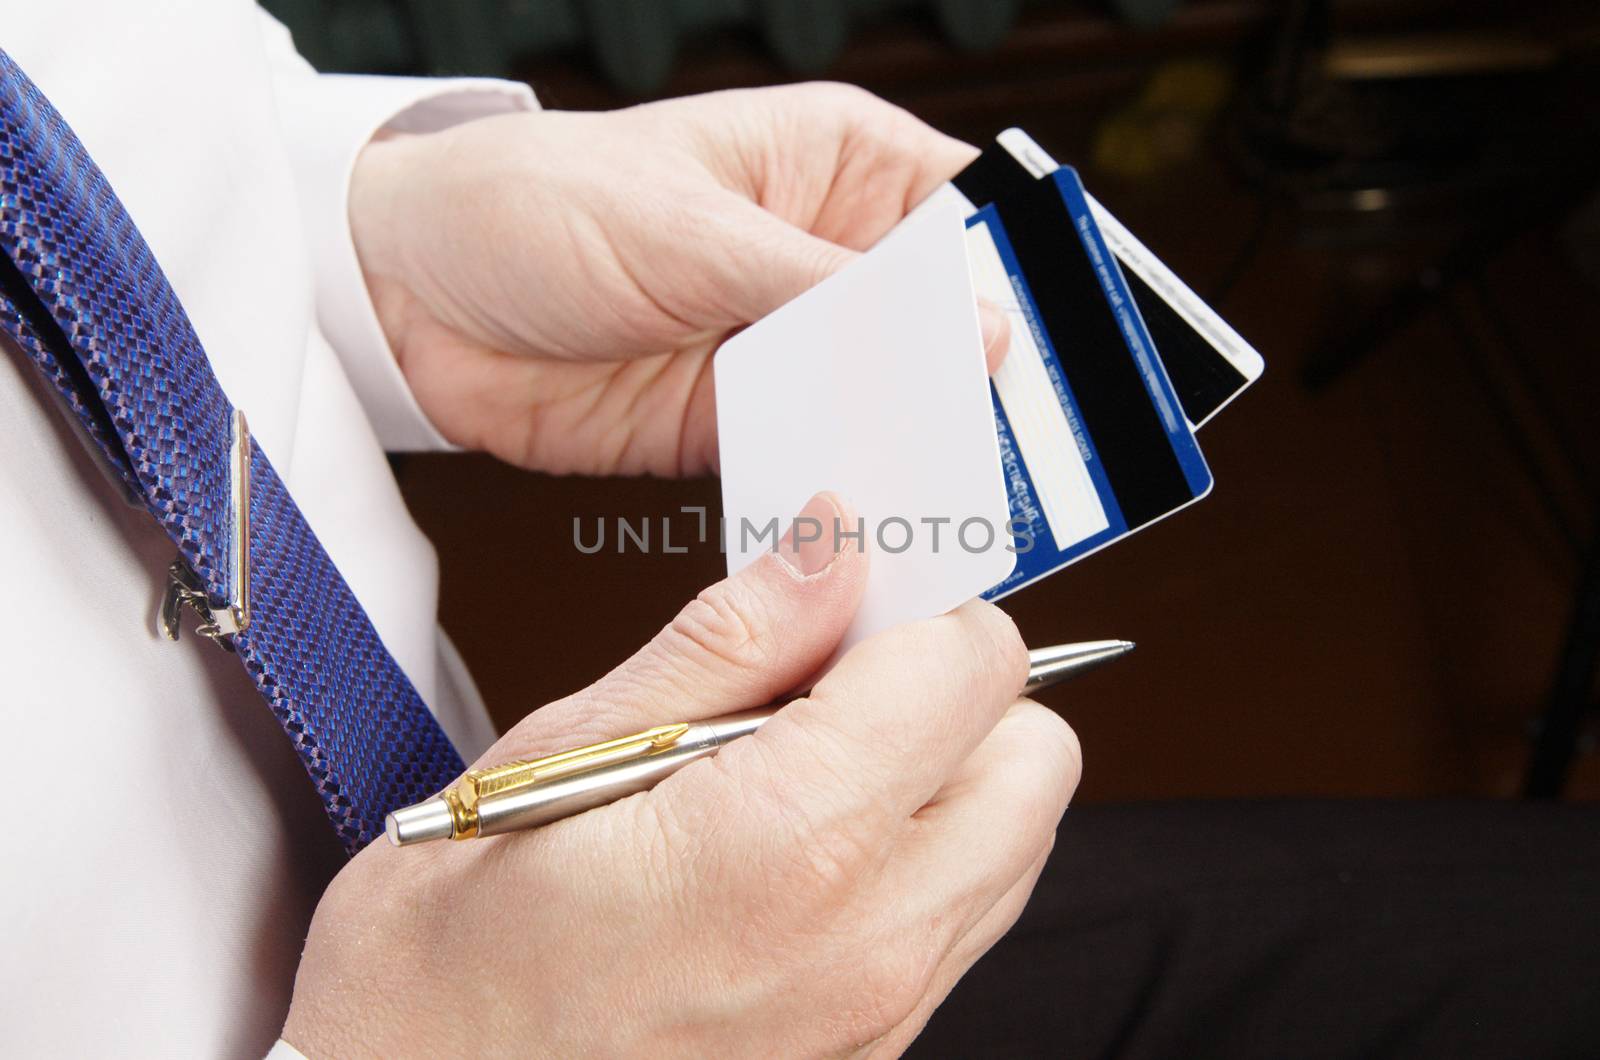 Businessman holding credit cards by Ravenestling